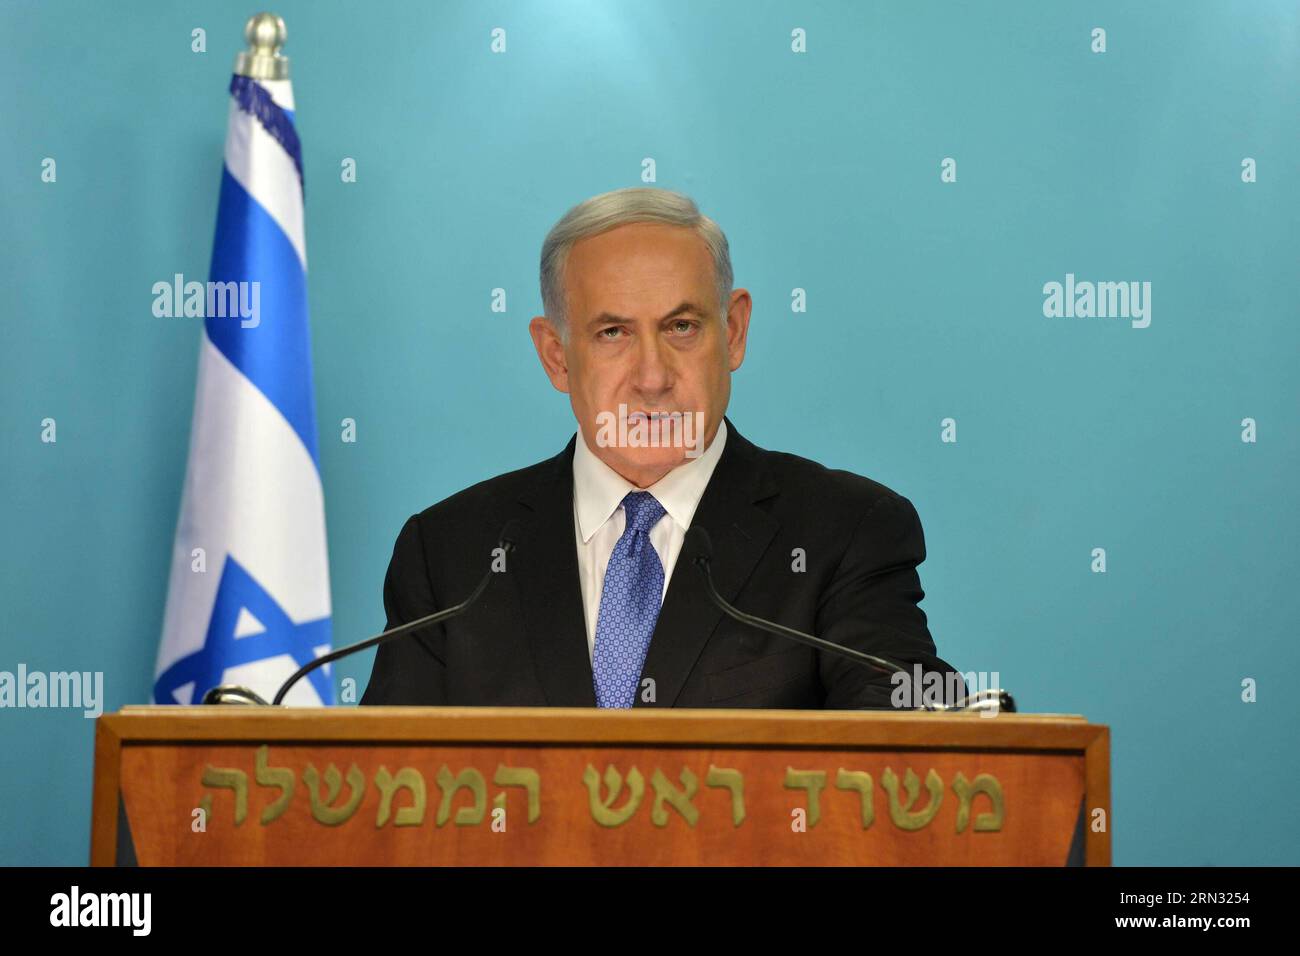 (150403) - GERUSALEMME, 3 aprile 2015 - il primo ministro israeliano Benjamin Netanyahu rilascia una dichiarazione alla stampa presso l'ufficio del primo ministro a Gerusalemme, il 3 aprile 2015. Il primo ministro israeliano Benjamin Netanyahu ha affermato venerdì che qualsiasi accordo quadro tra l'Iran e la comunità internazionale deve impegnarsi a riconoscere il diritto di Israele ad esistere. GPO/) -ISRAEL OUT- MIDEAST-JERUSALEM-ISRAEL-PM-IRAN-FRAMEWORK DEAL-NUCLEAR RISK-STATEMENT KobixGideon PUBLICATIONxNOTxINxCHN Gerusalemme 3 aprile 2015 i primi ministri israeliani Benjamin Netanyahu rilasciano una dichiarazione alla stampa AL primo Minist Foto Stock